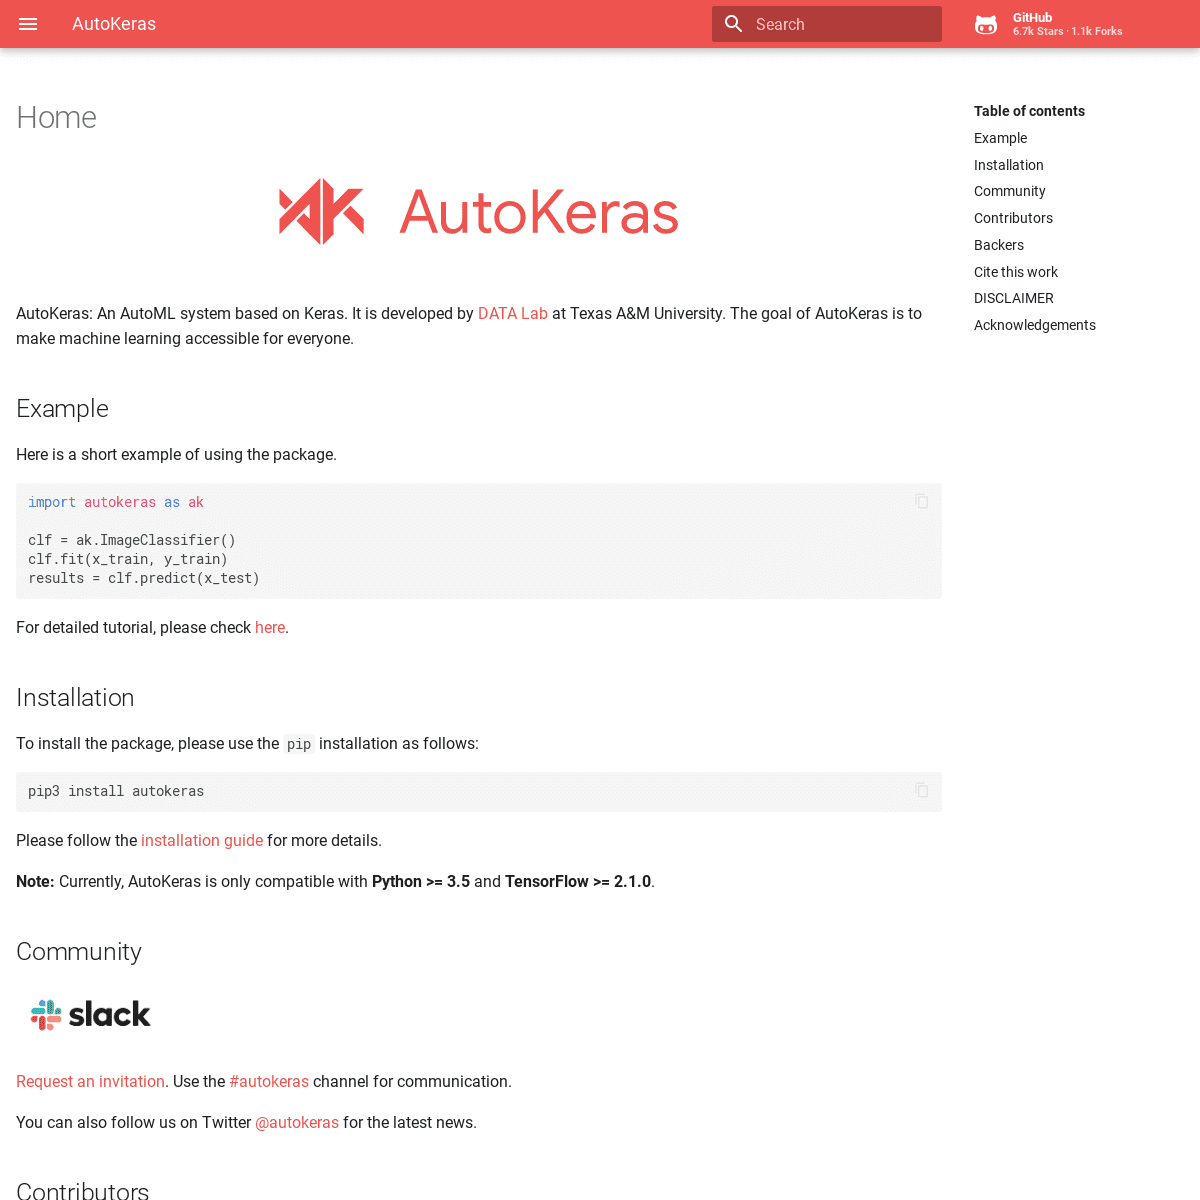 A complete backup of autokeras.com